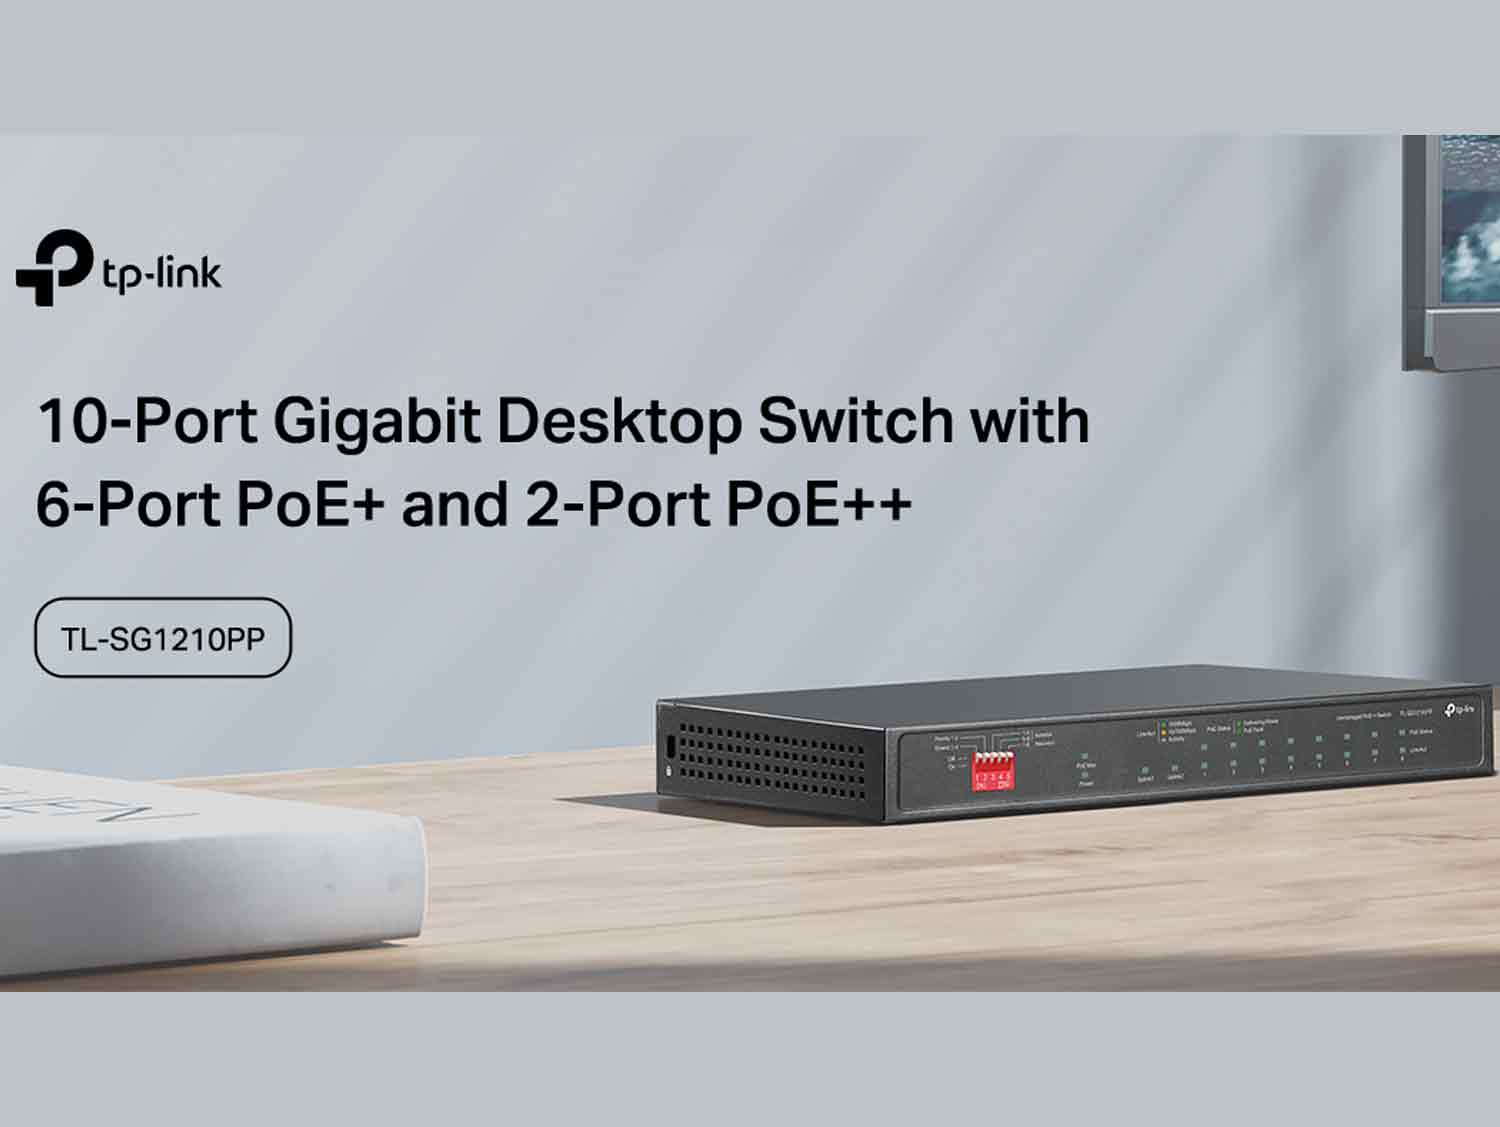 TP link TL-SG1210PP 10-Port Gigabit Desktop Switch